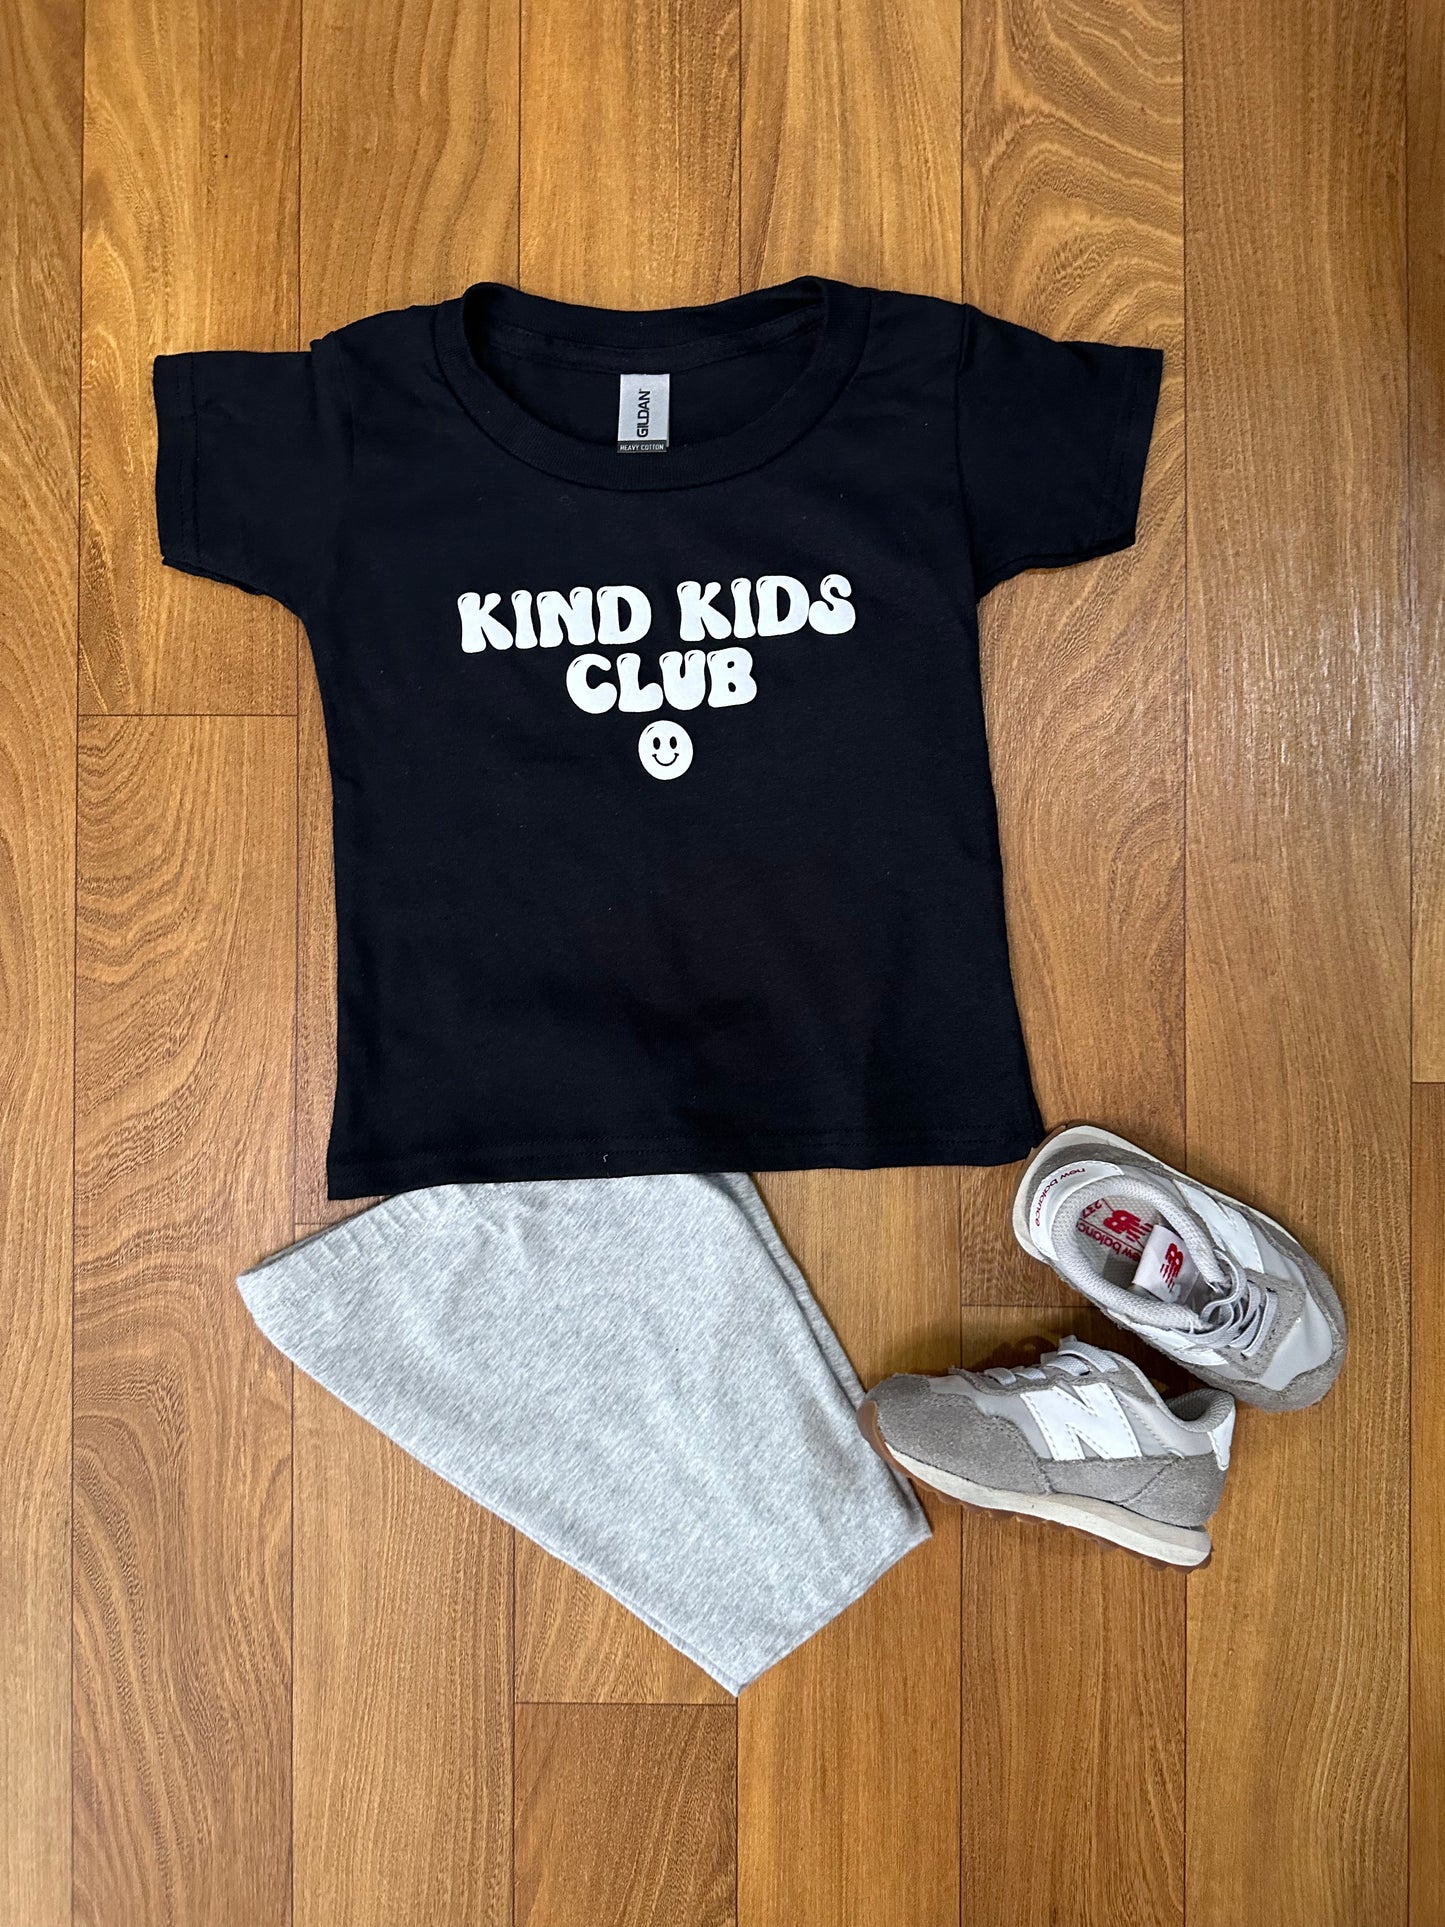 Kind Kids Club tee